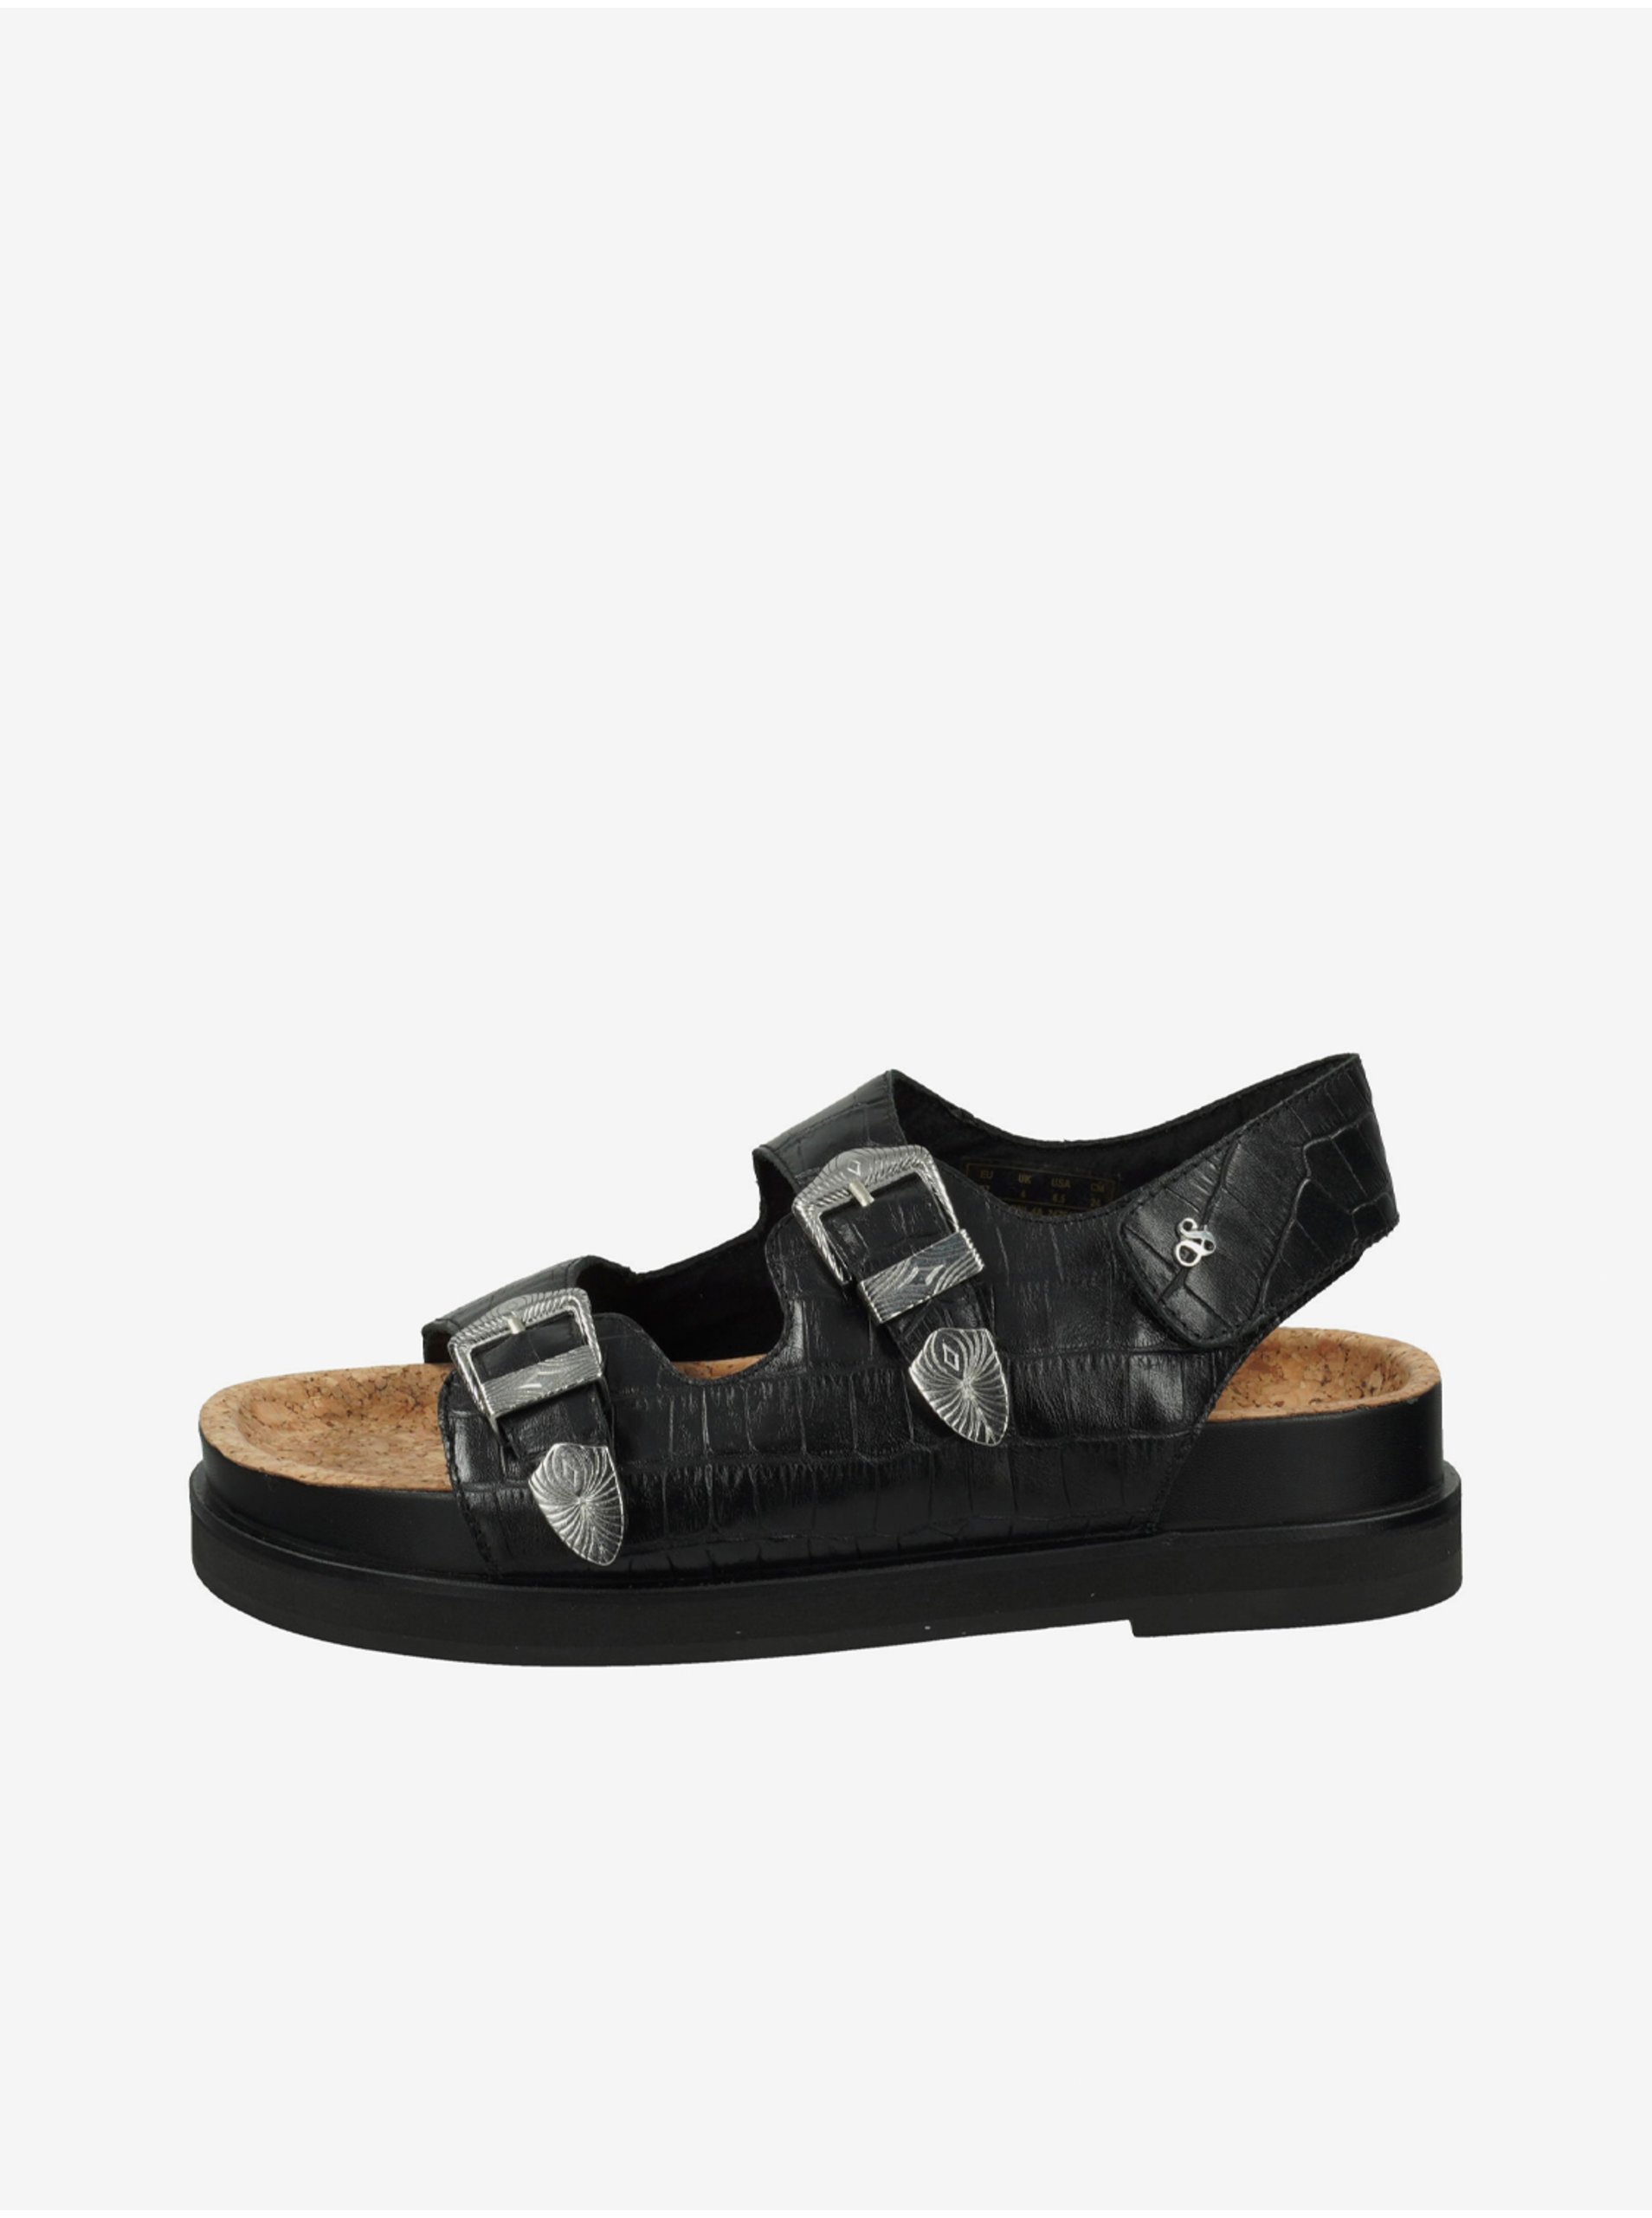 E-shop Černé dámské kožené sandále Scotch & Soda Anni